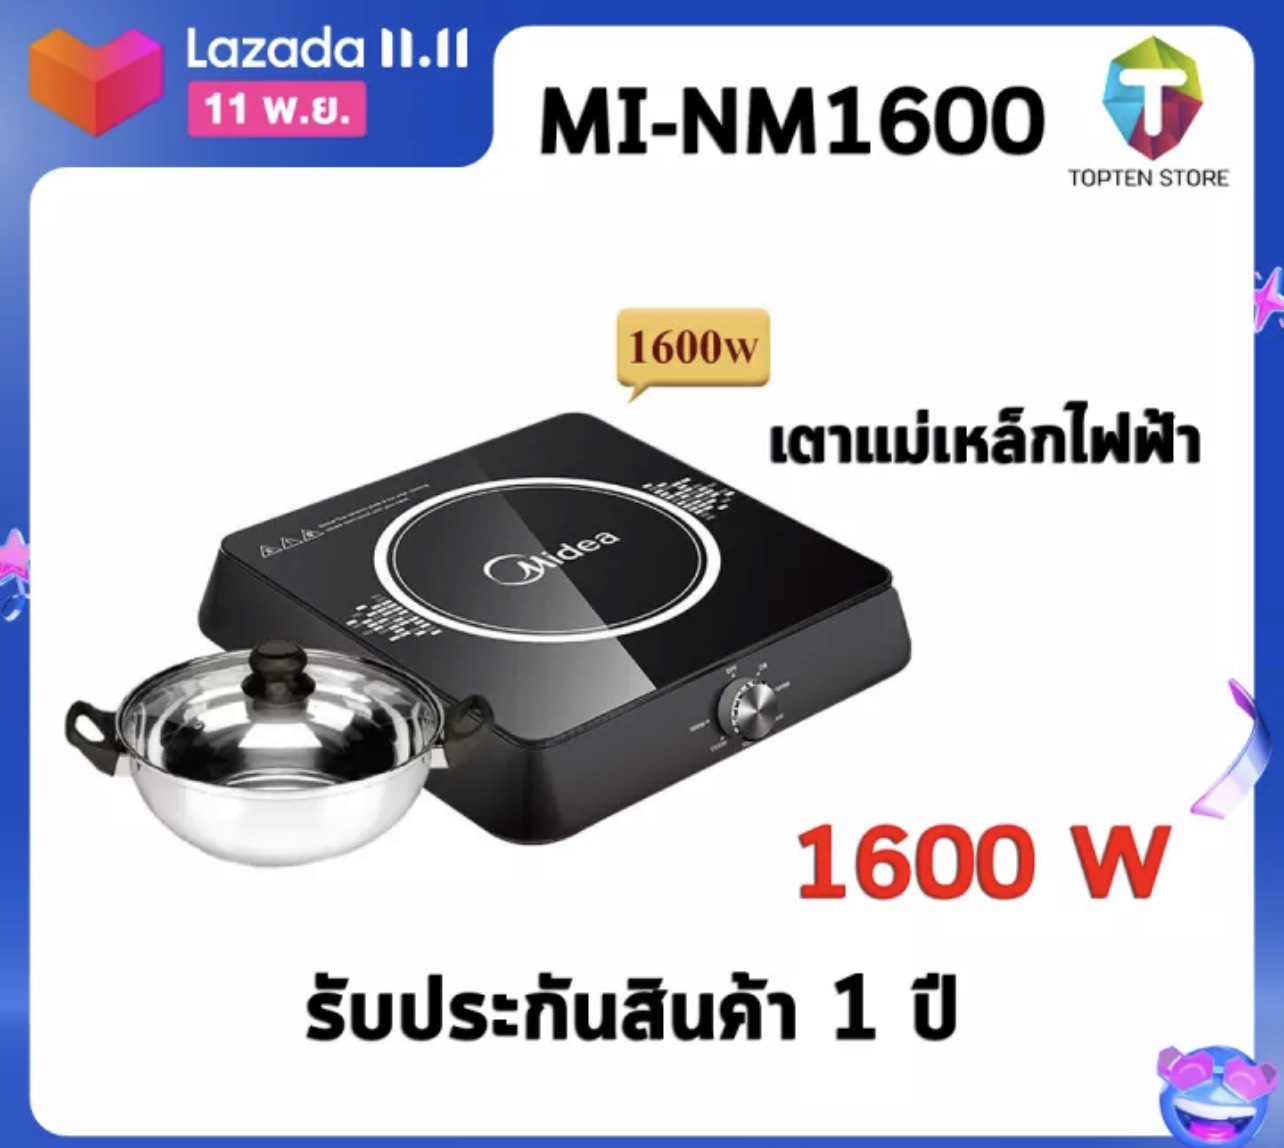 ลดแรงเว่อร์ MIDEA เตาแม่เหล็กไฟฟ้า+หม้อ รุ่น MI-NM1600